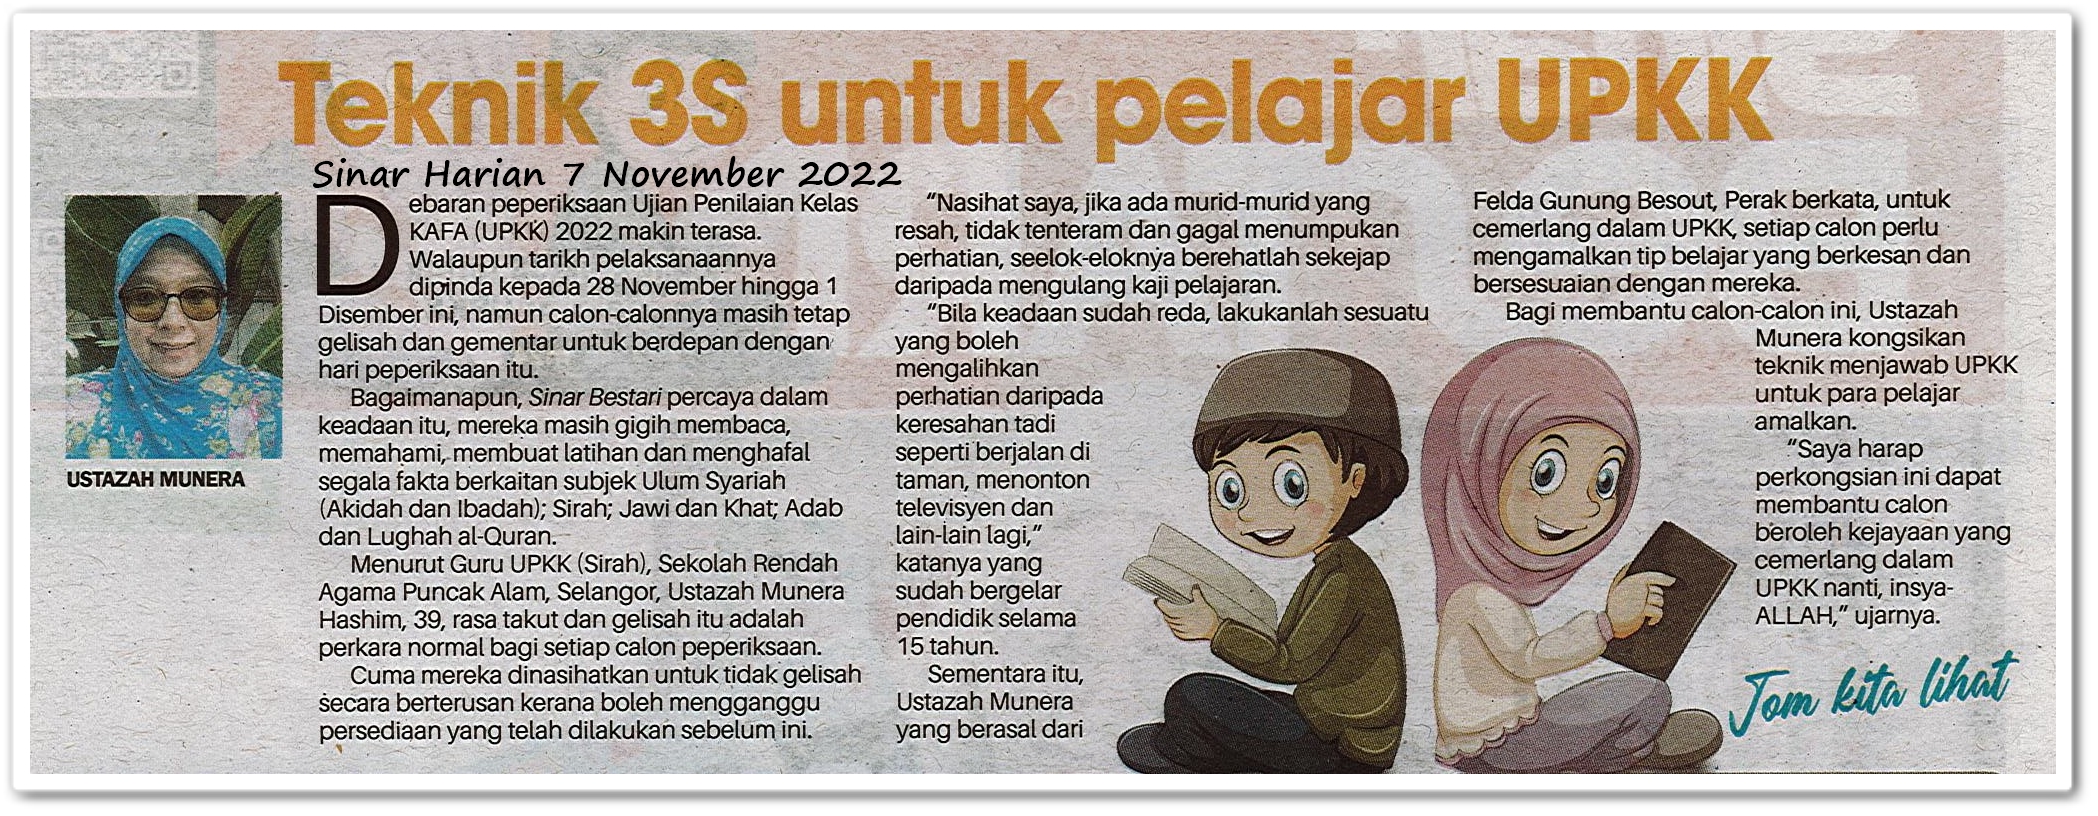 Teknik 3S untuk pelajar UPKK - Keratan akhbar Sinar Harian 7 November 2022